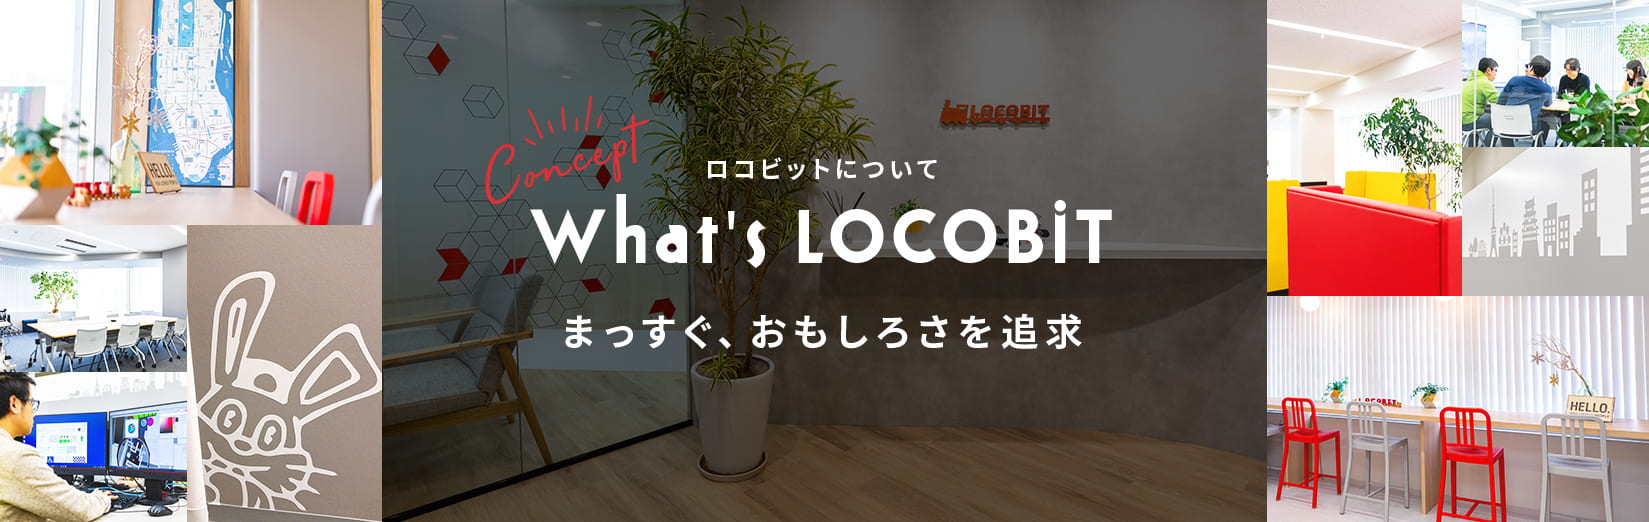 ロコビットについて What's LOCOBIT まっすぐ、おもしろさを追求